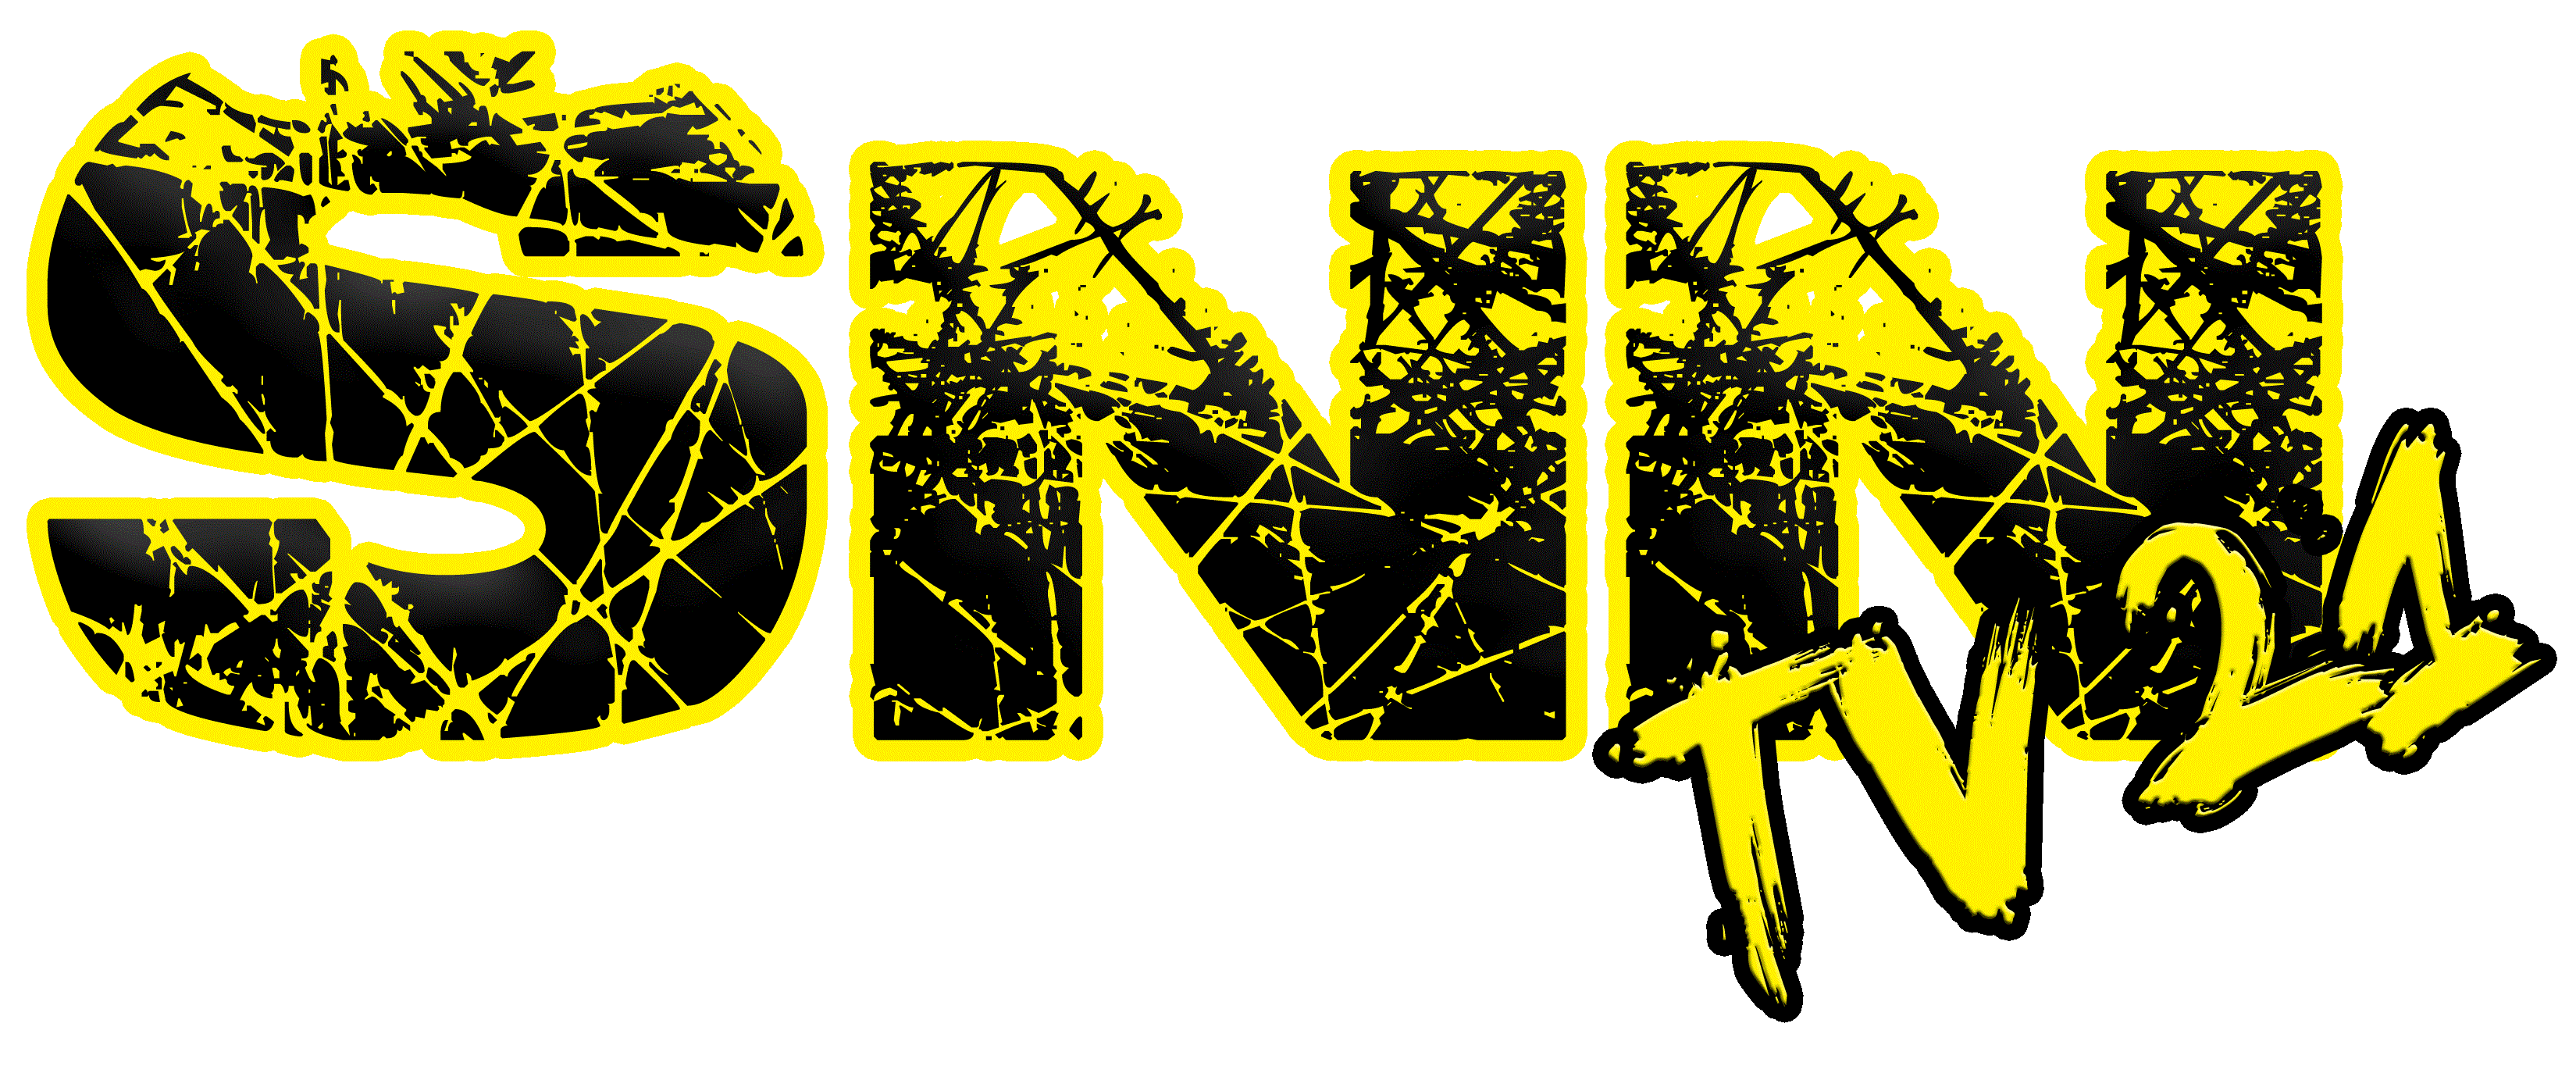 SNN Logo